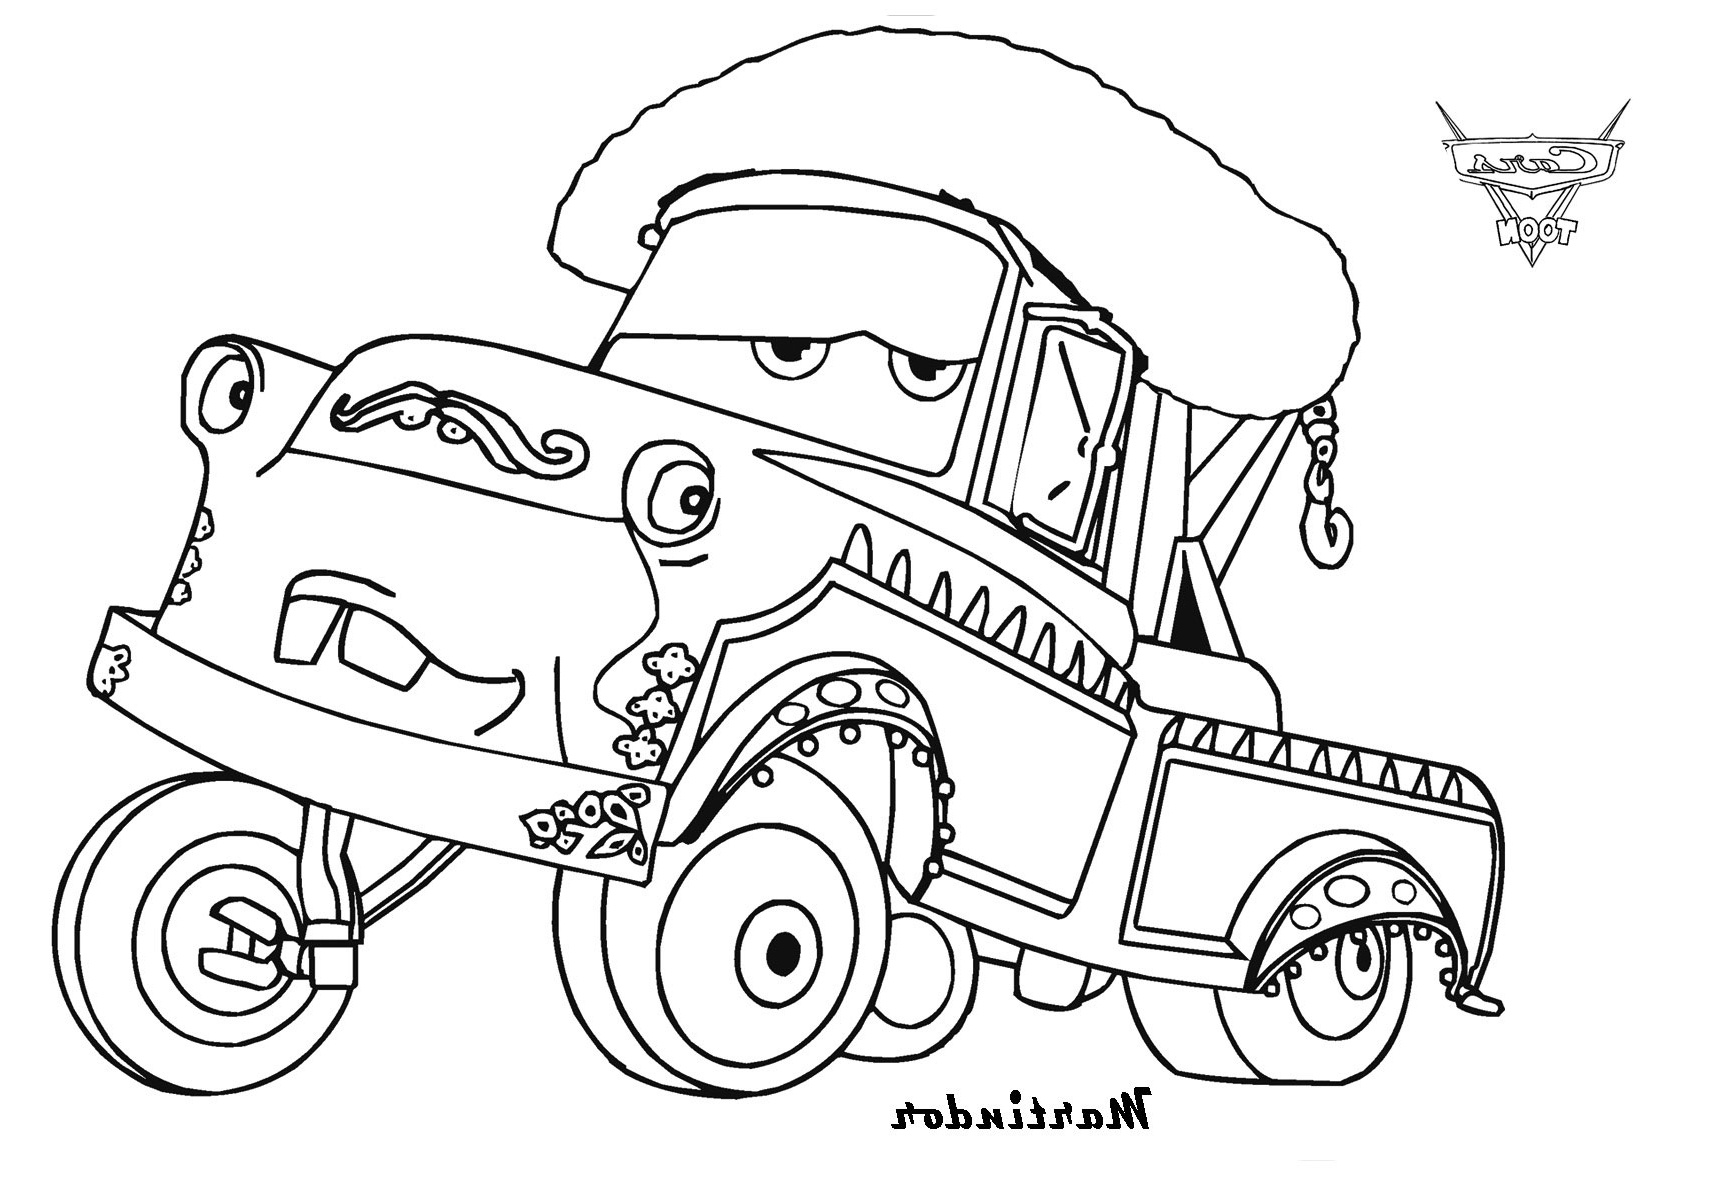 frais dessin a colorier camion cars mademoiselleosaki serapportanta dessin a colorier cars